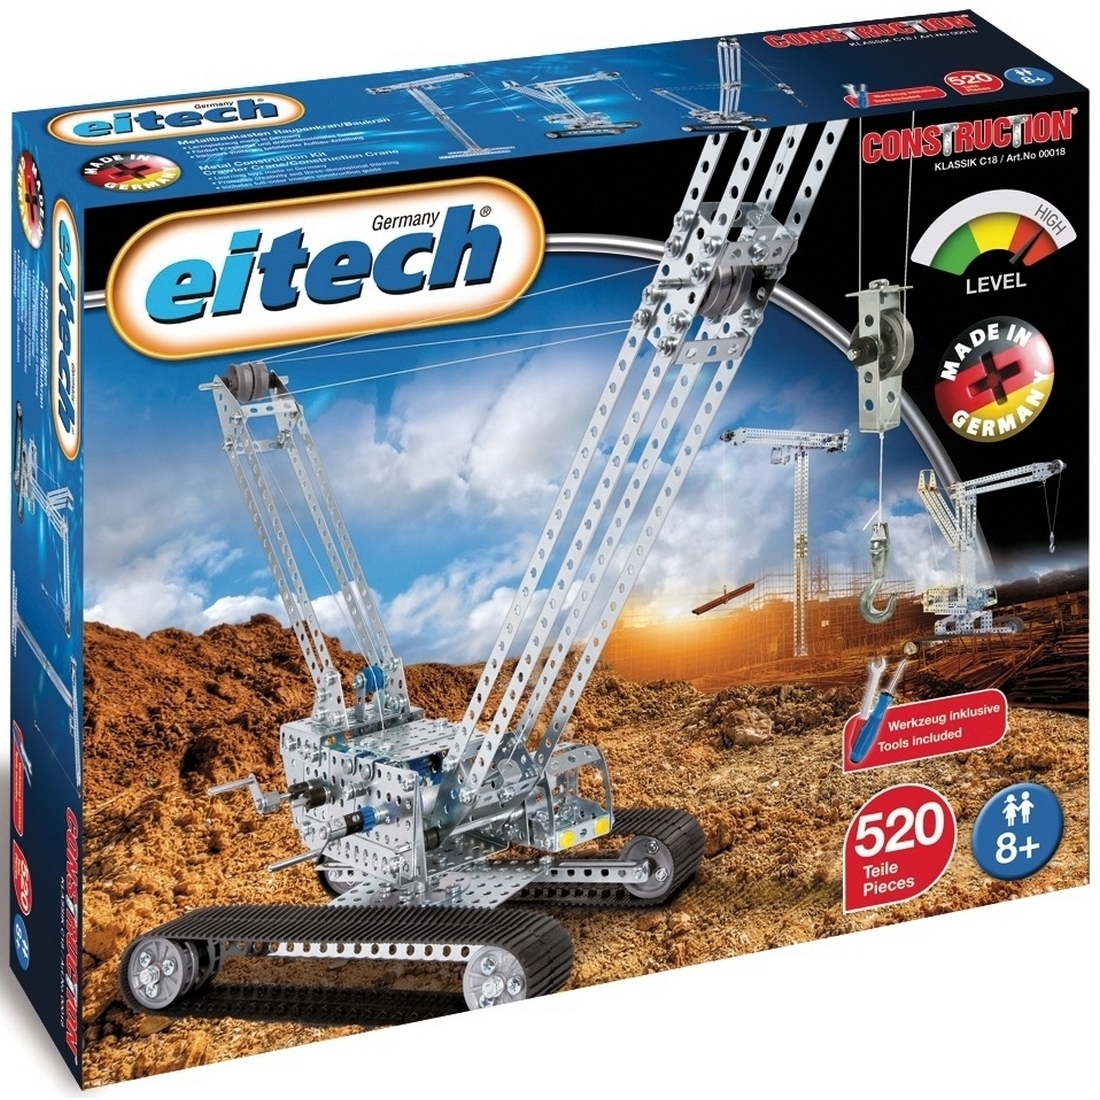    EiTech   - 520 